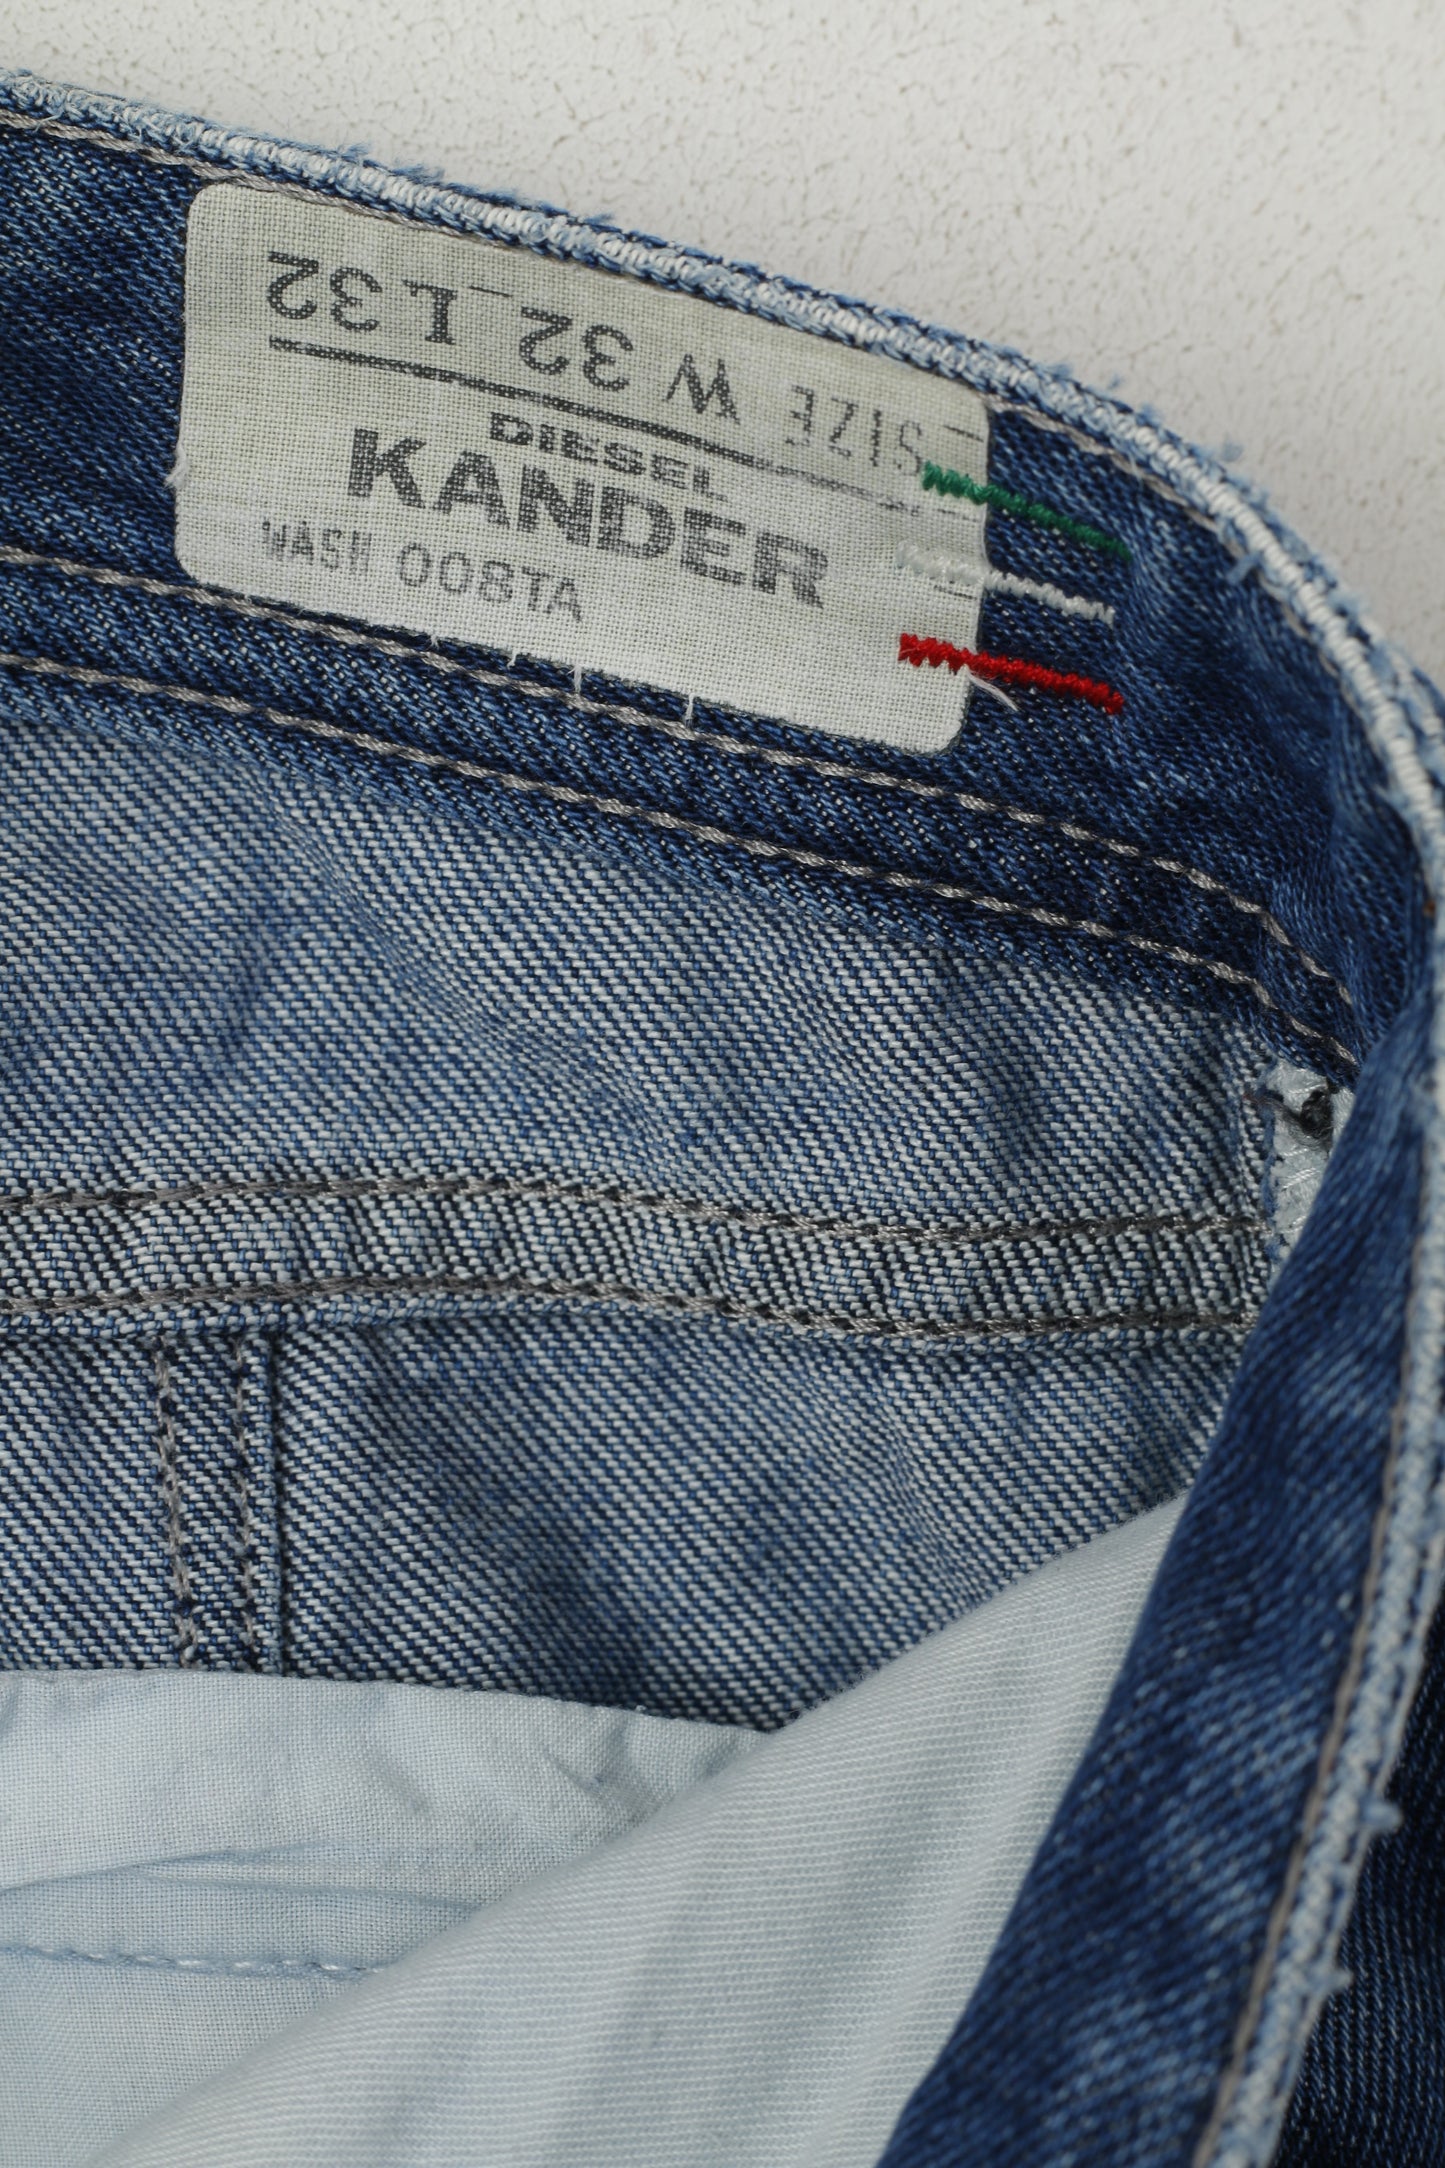 Diesel Industry Kander Pantalon Homme 32 Bleu Denim Coton Fabriqué en Italie Pantalon